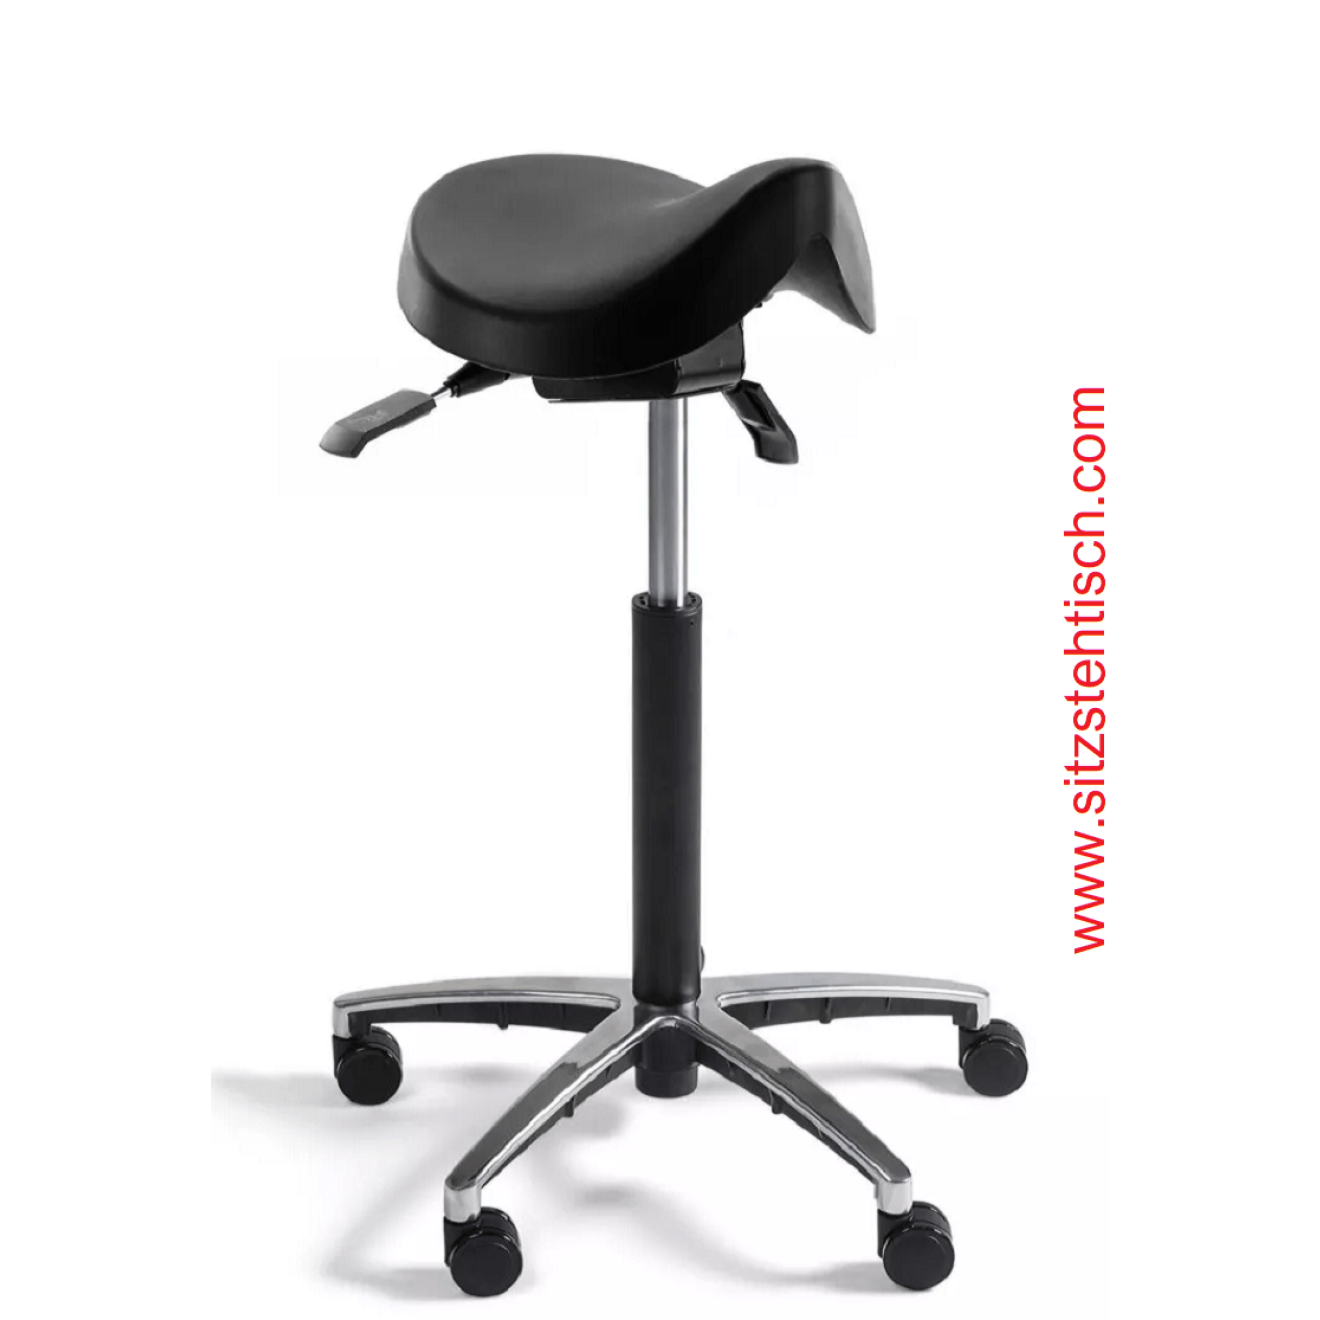 Sattelhocker mit Sitz aus PU Schaum schwarz - Sitzhöhen- und Sitzwinkelverstellung - Belastbarkeit bis 125 kg - 5 Jahre Garantie - 107437